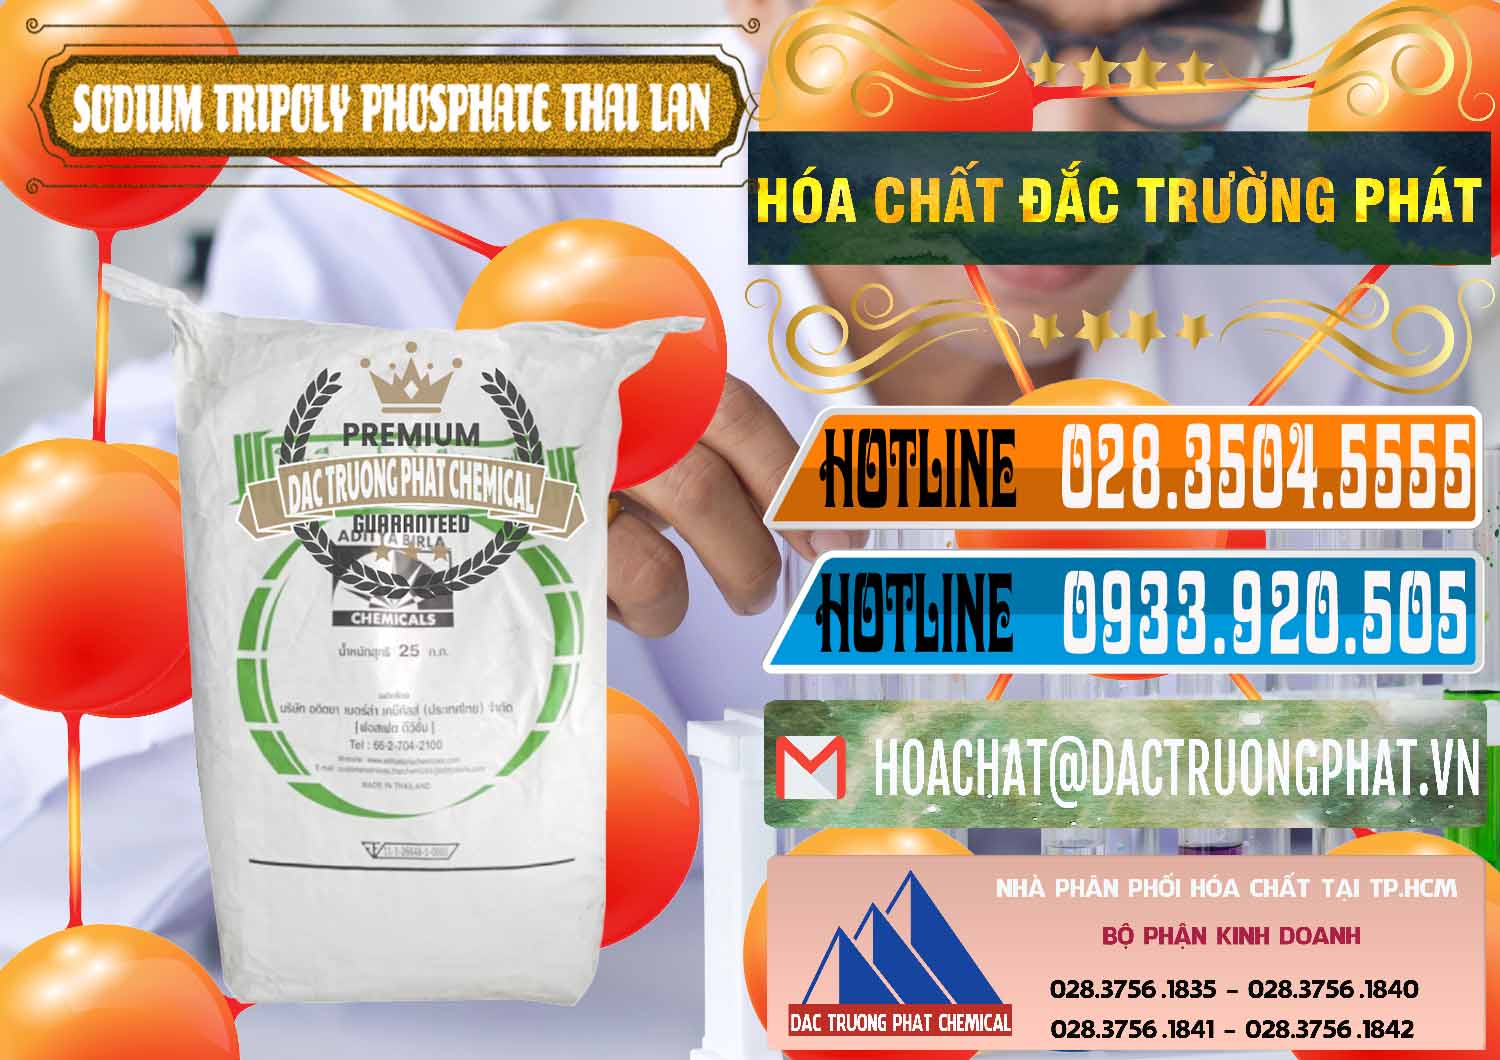 Nhà cung ứng & bán Sodium Tripoly Phosphate - STPP Aditya Birla Grasim Thái Lan Thailand - 0421 - Cty nhập khẩu _ phân phối hóa chất tại TP.HCM - stmp.net